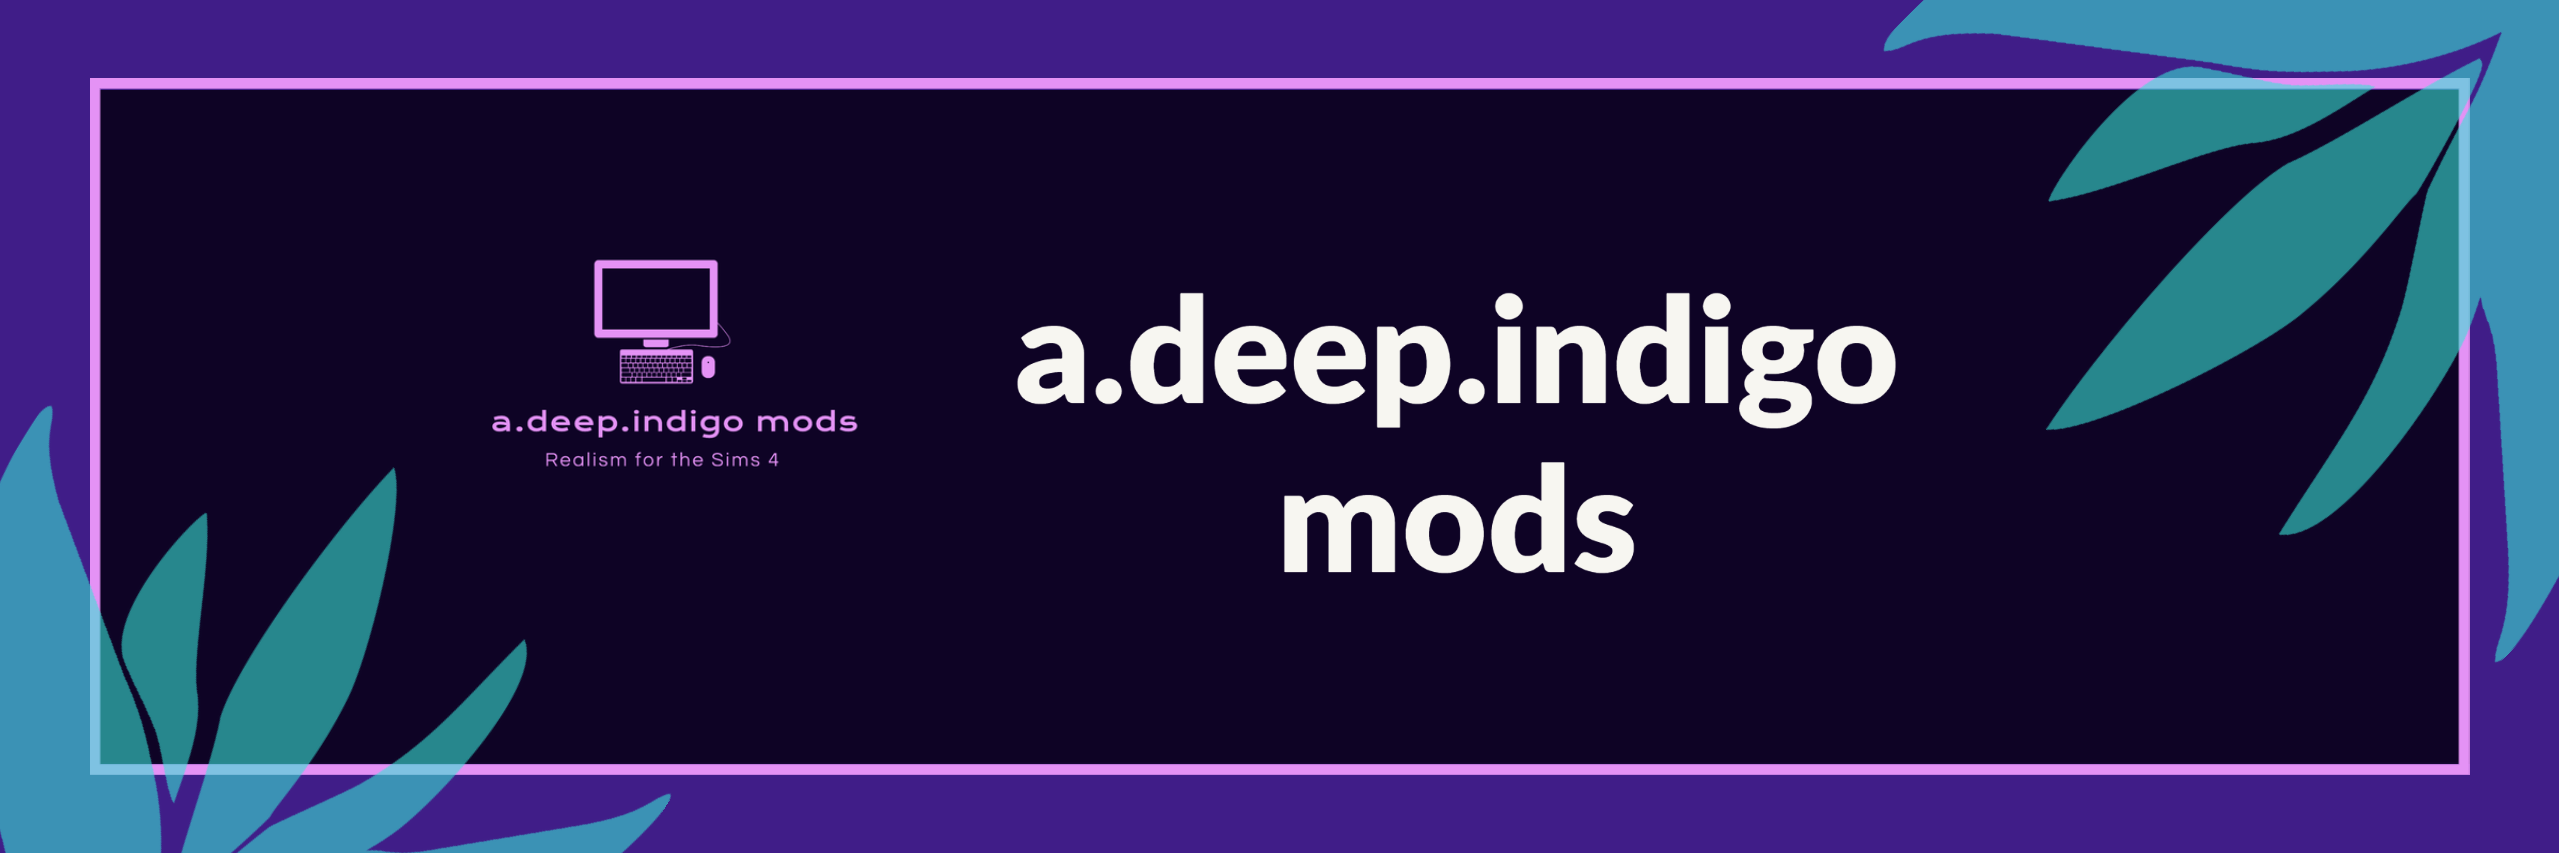 Mod Descriptions Index